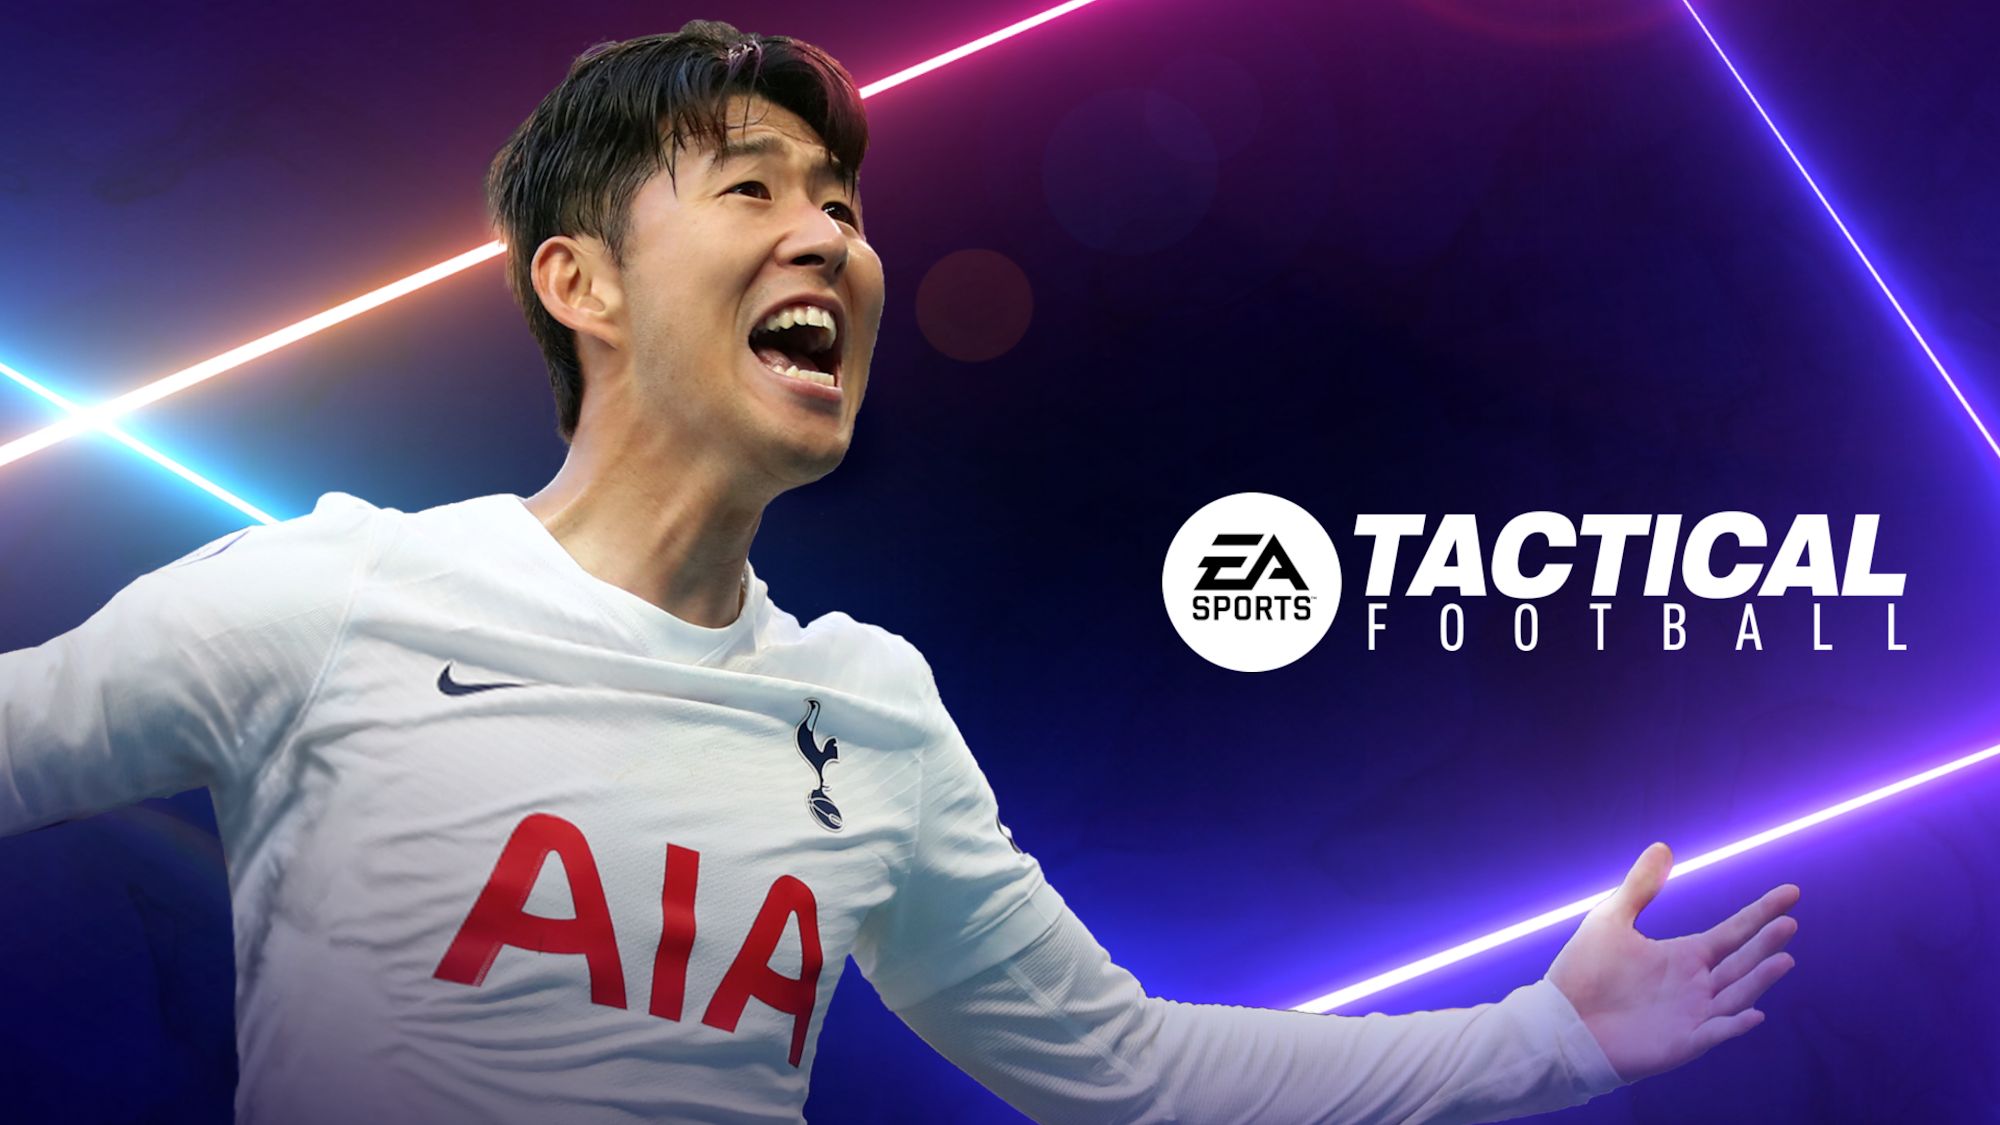 EA SPORTS Tactical Football スクリーンショット1